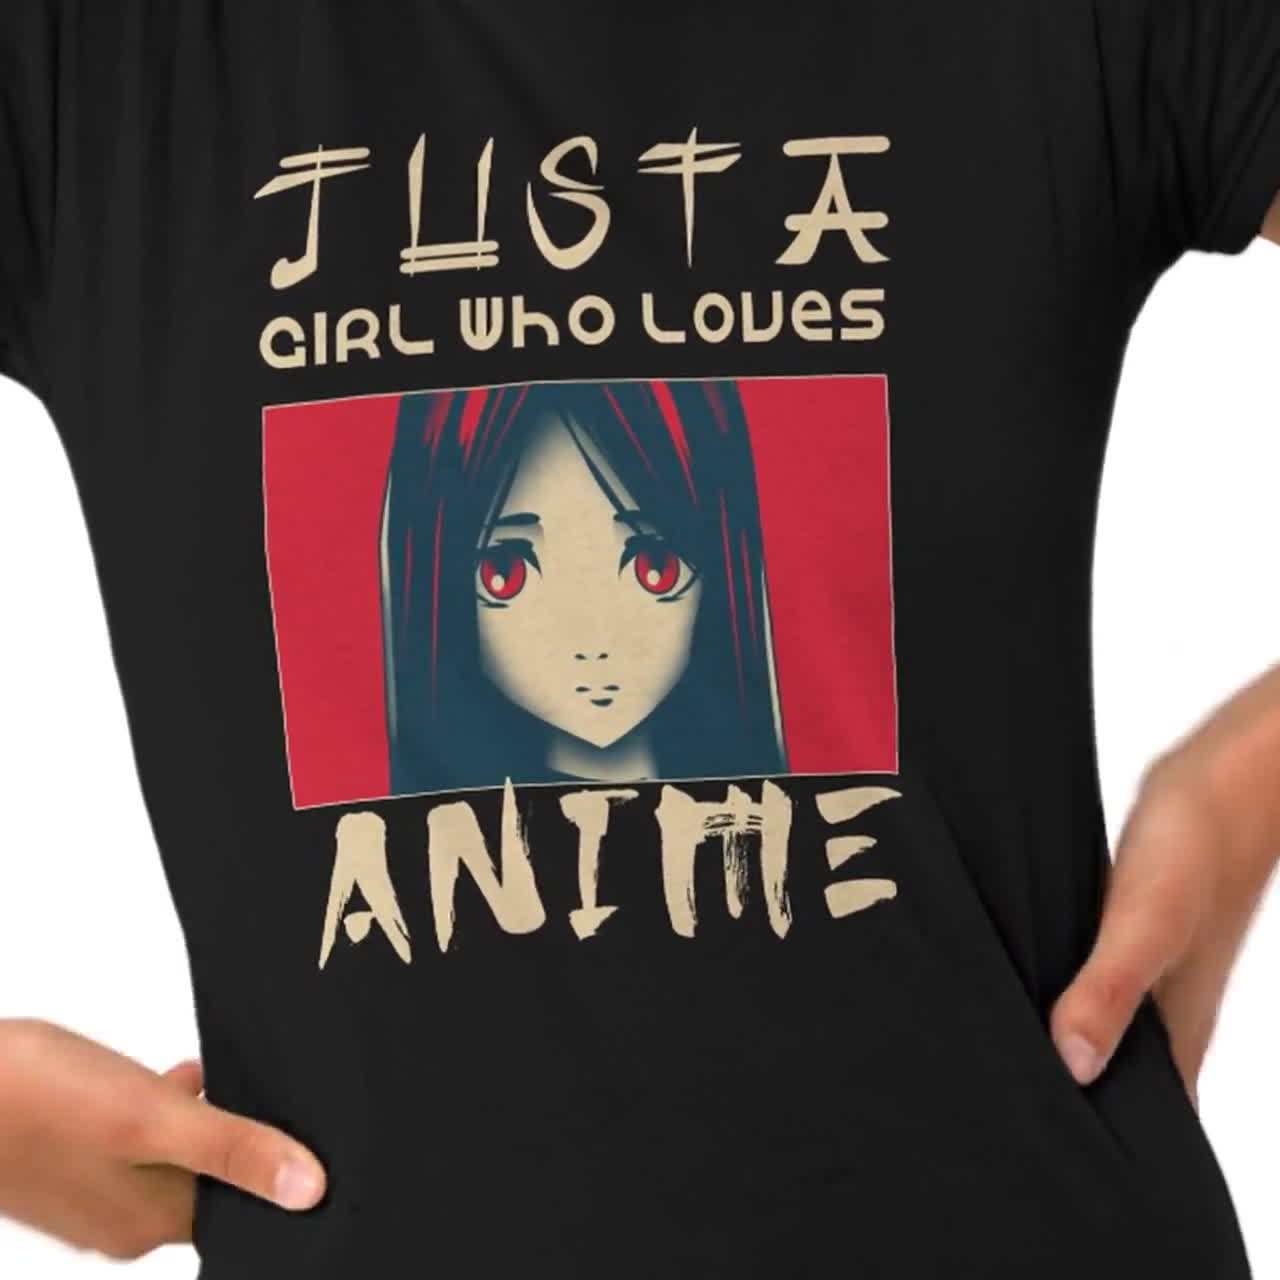  Anime Girl Japanese Aesthetic anime Otaku Long Sleeve T-Shirt :  Clothing, Shoes & Jewelry